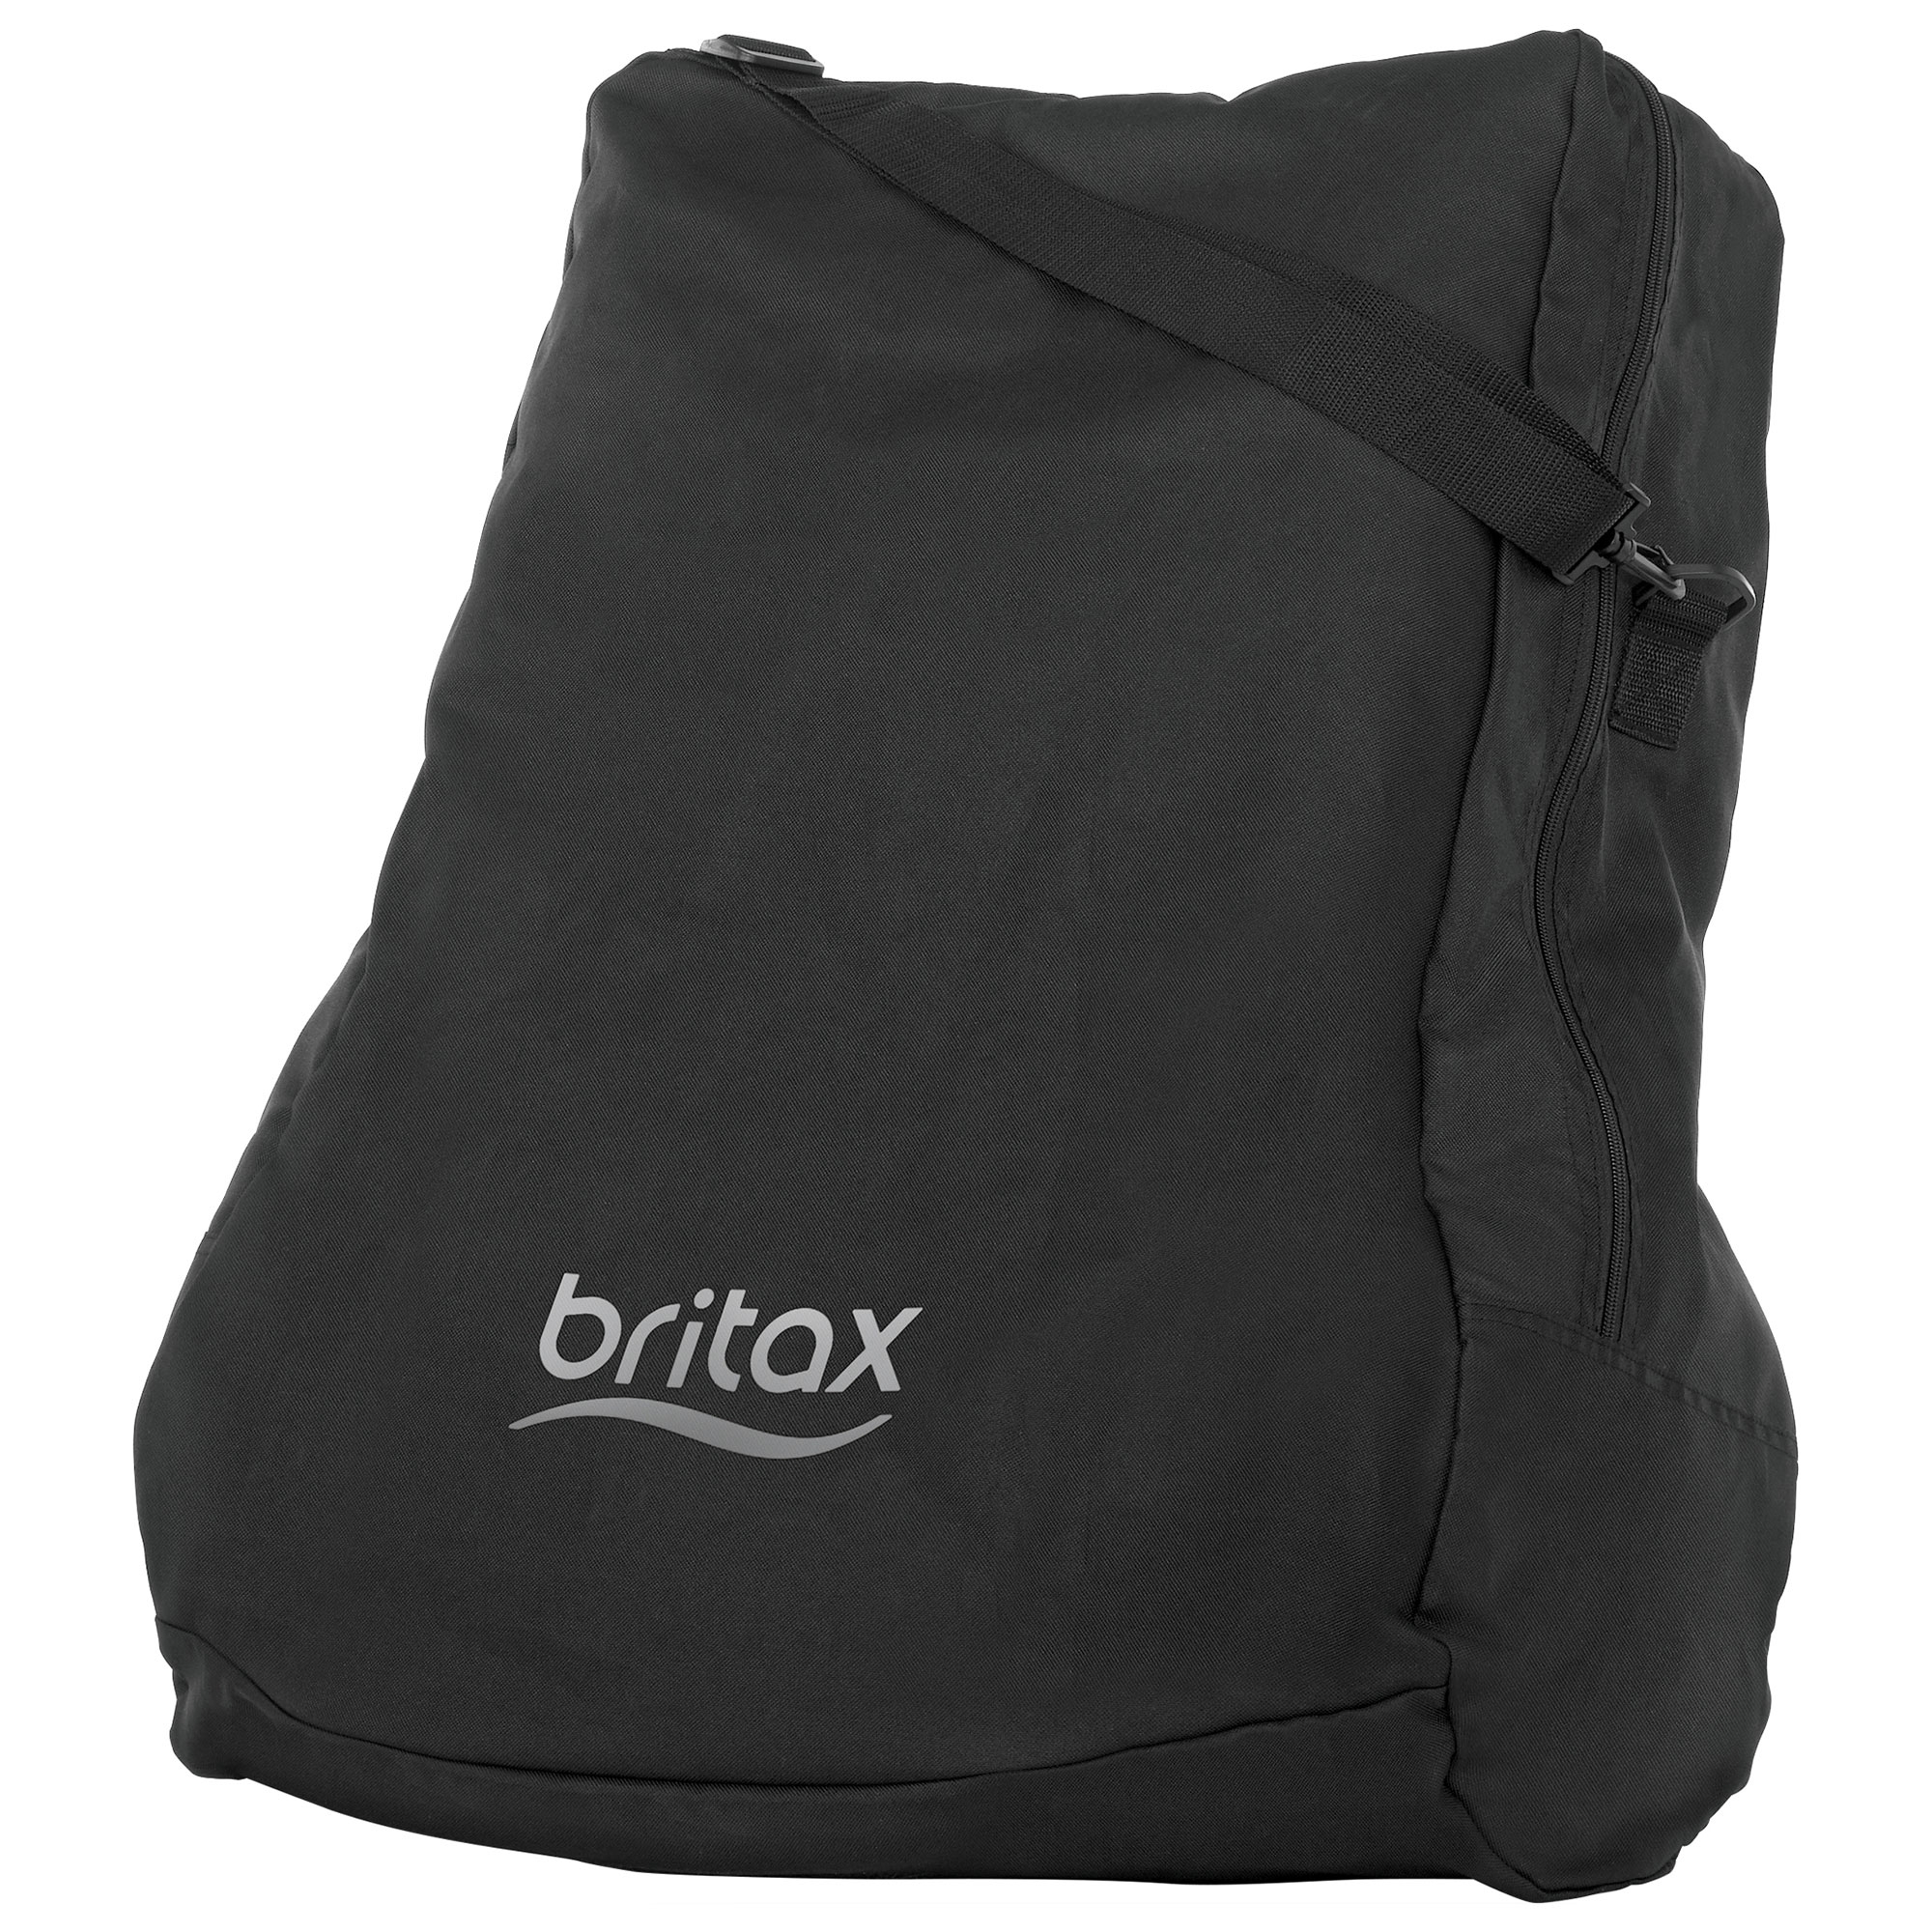 britax holiday bag